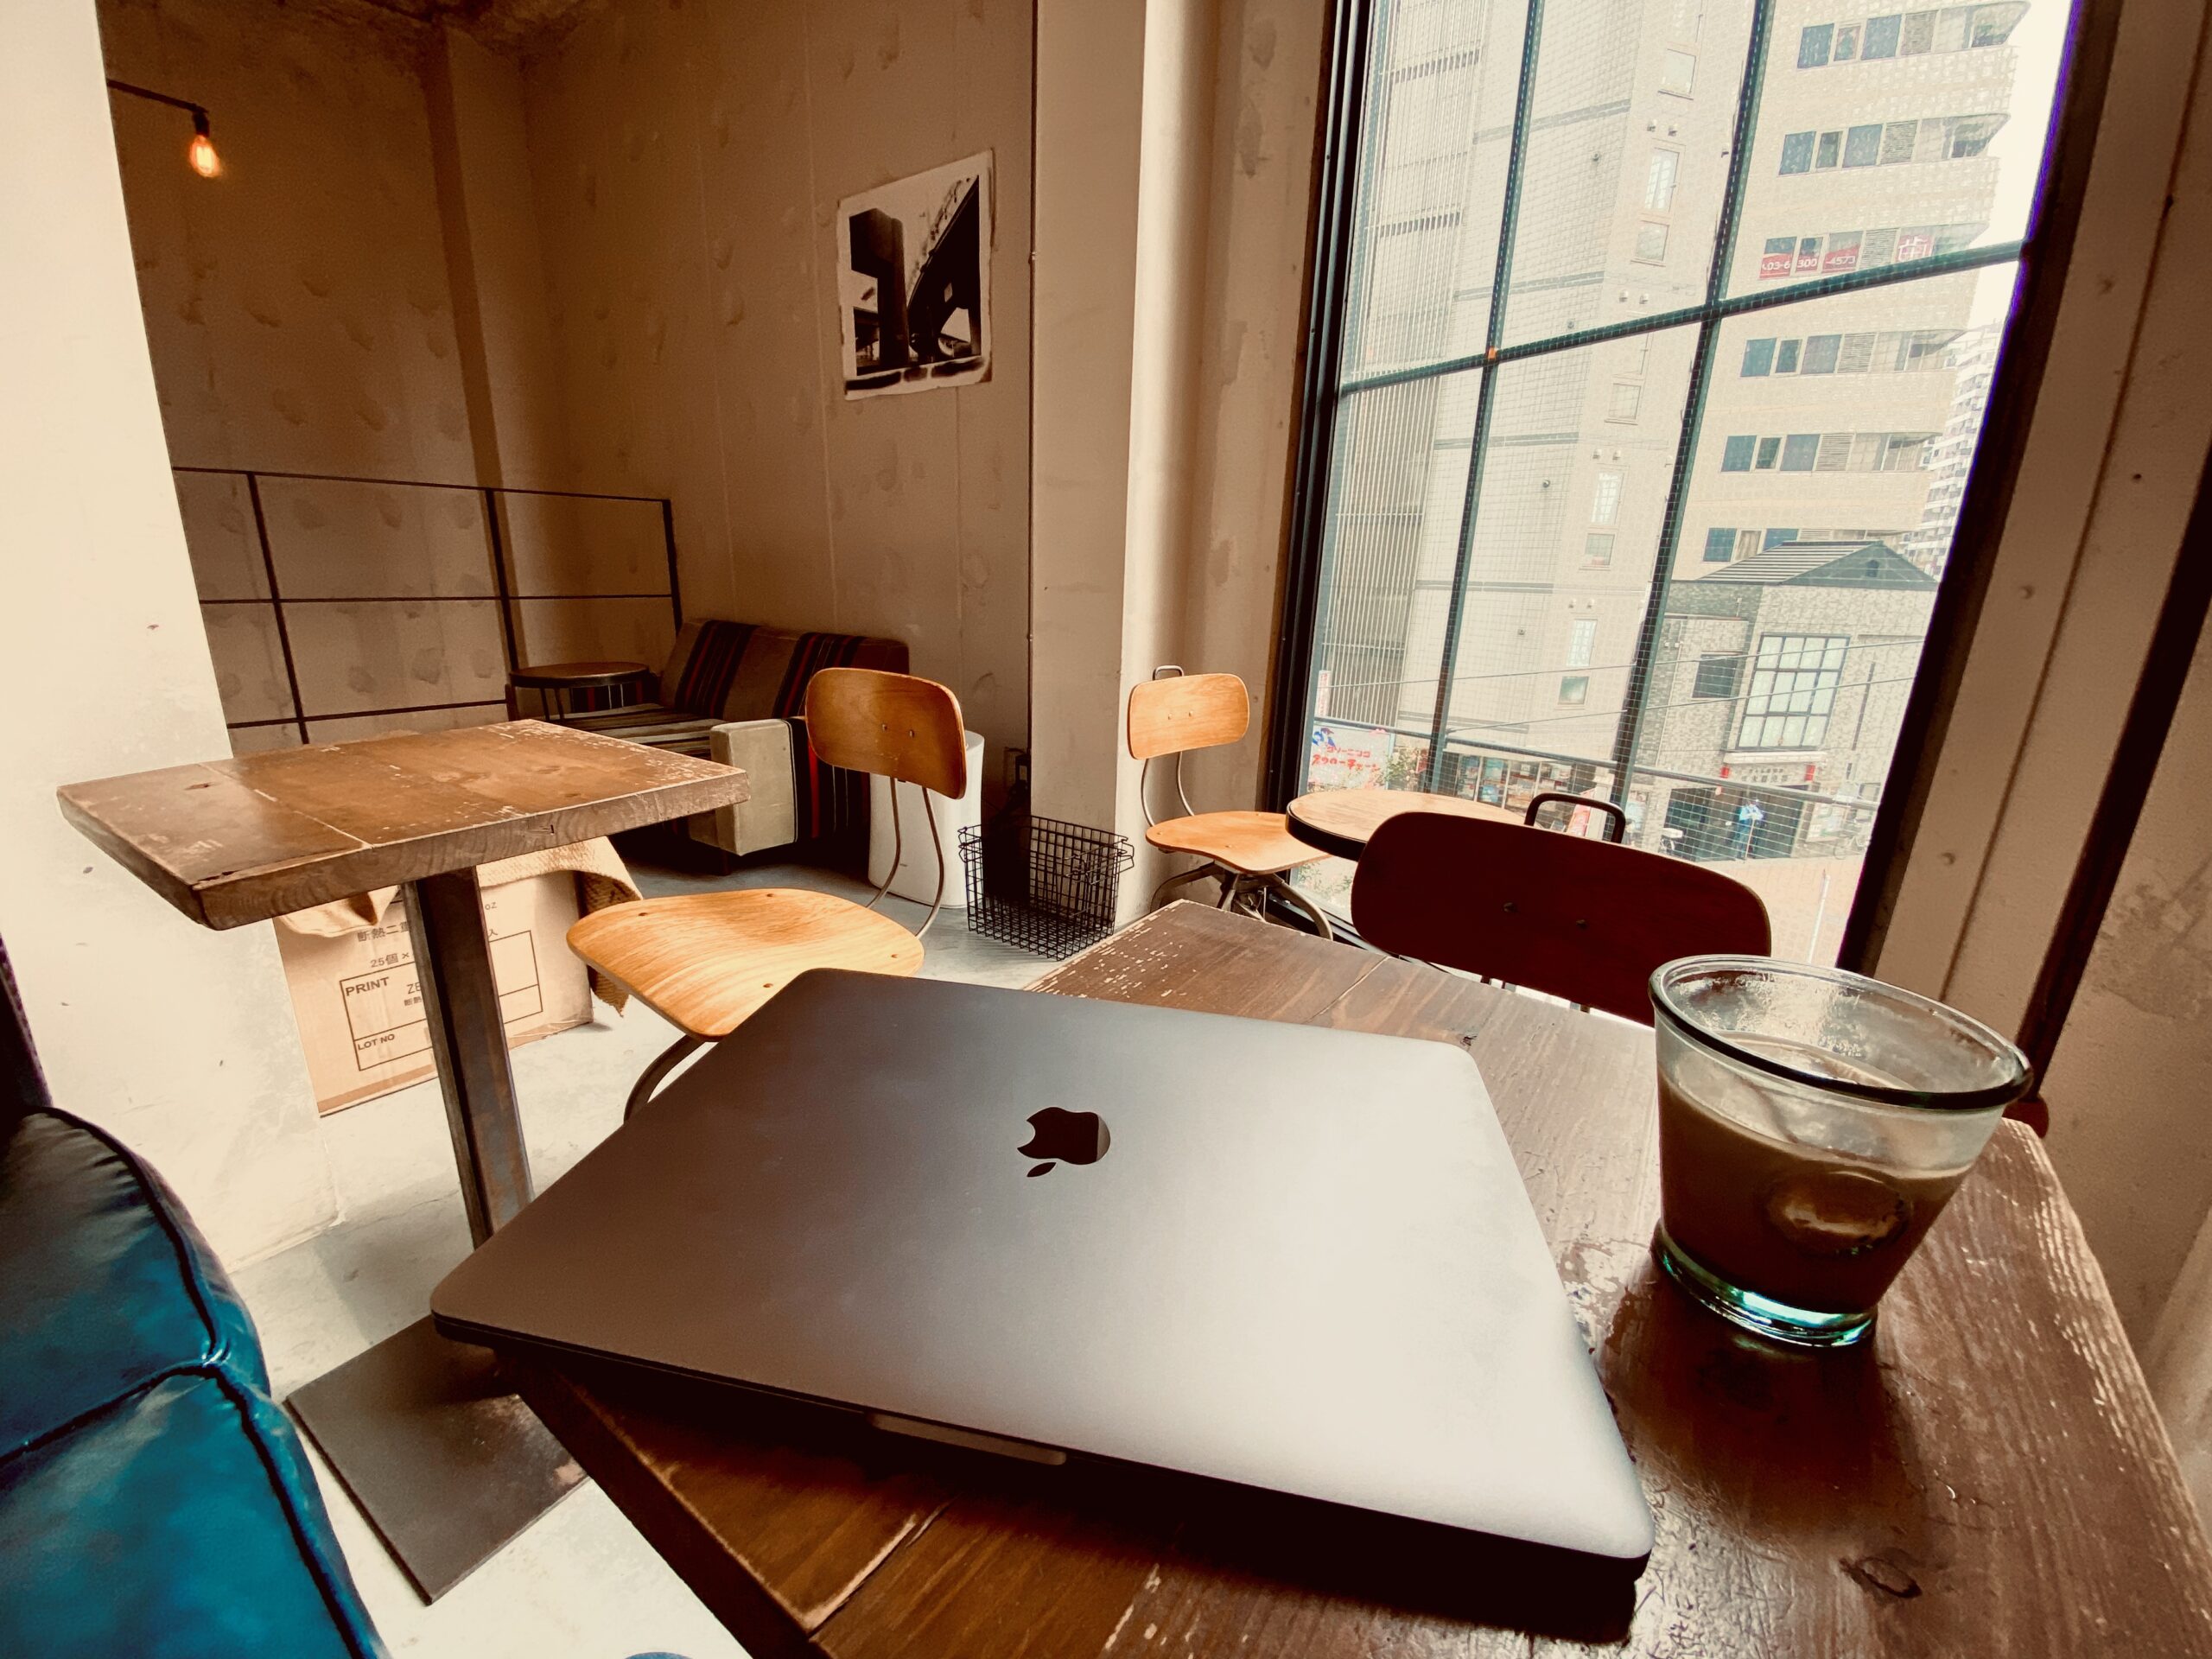 ブルートラベルエンジニア パソコン作業（プログラミング学習環境）におすすめのカフェ|新宿・高田馬場 COUNTERPART COFFEE GALLERY（カウンターパート・コーヒーギャラリー）